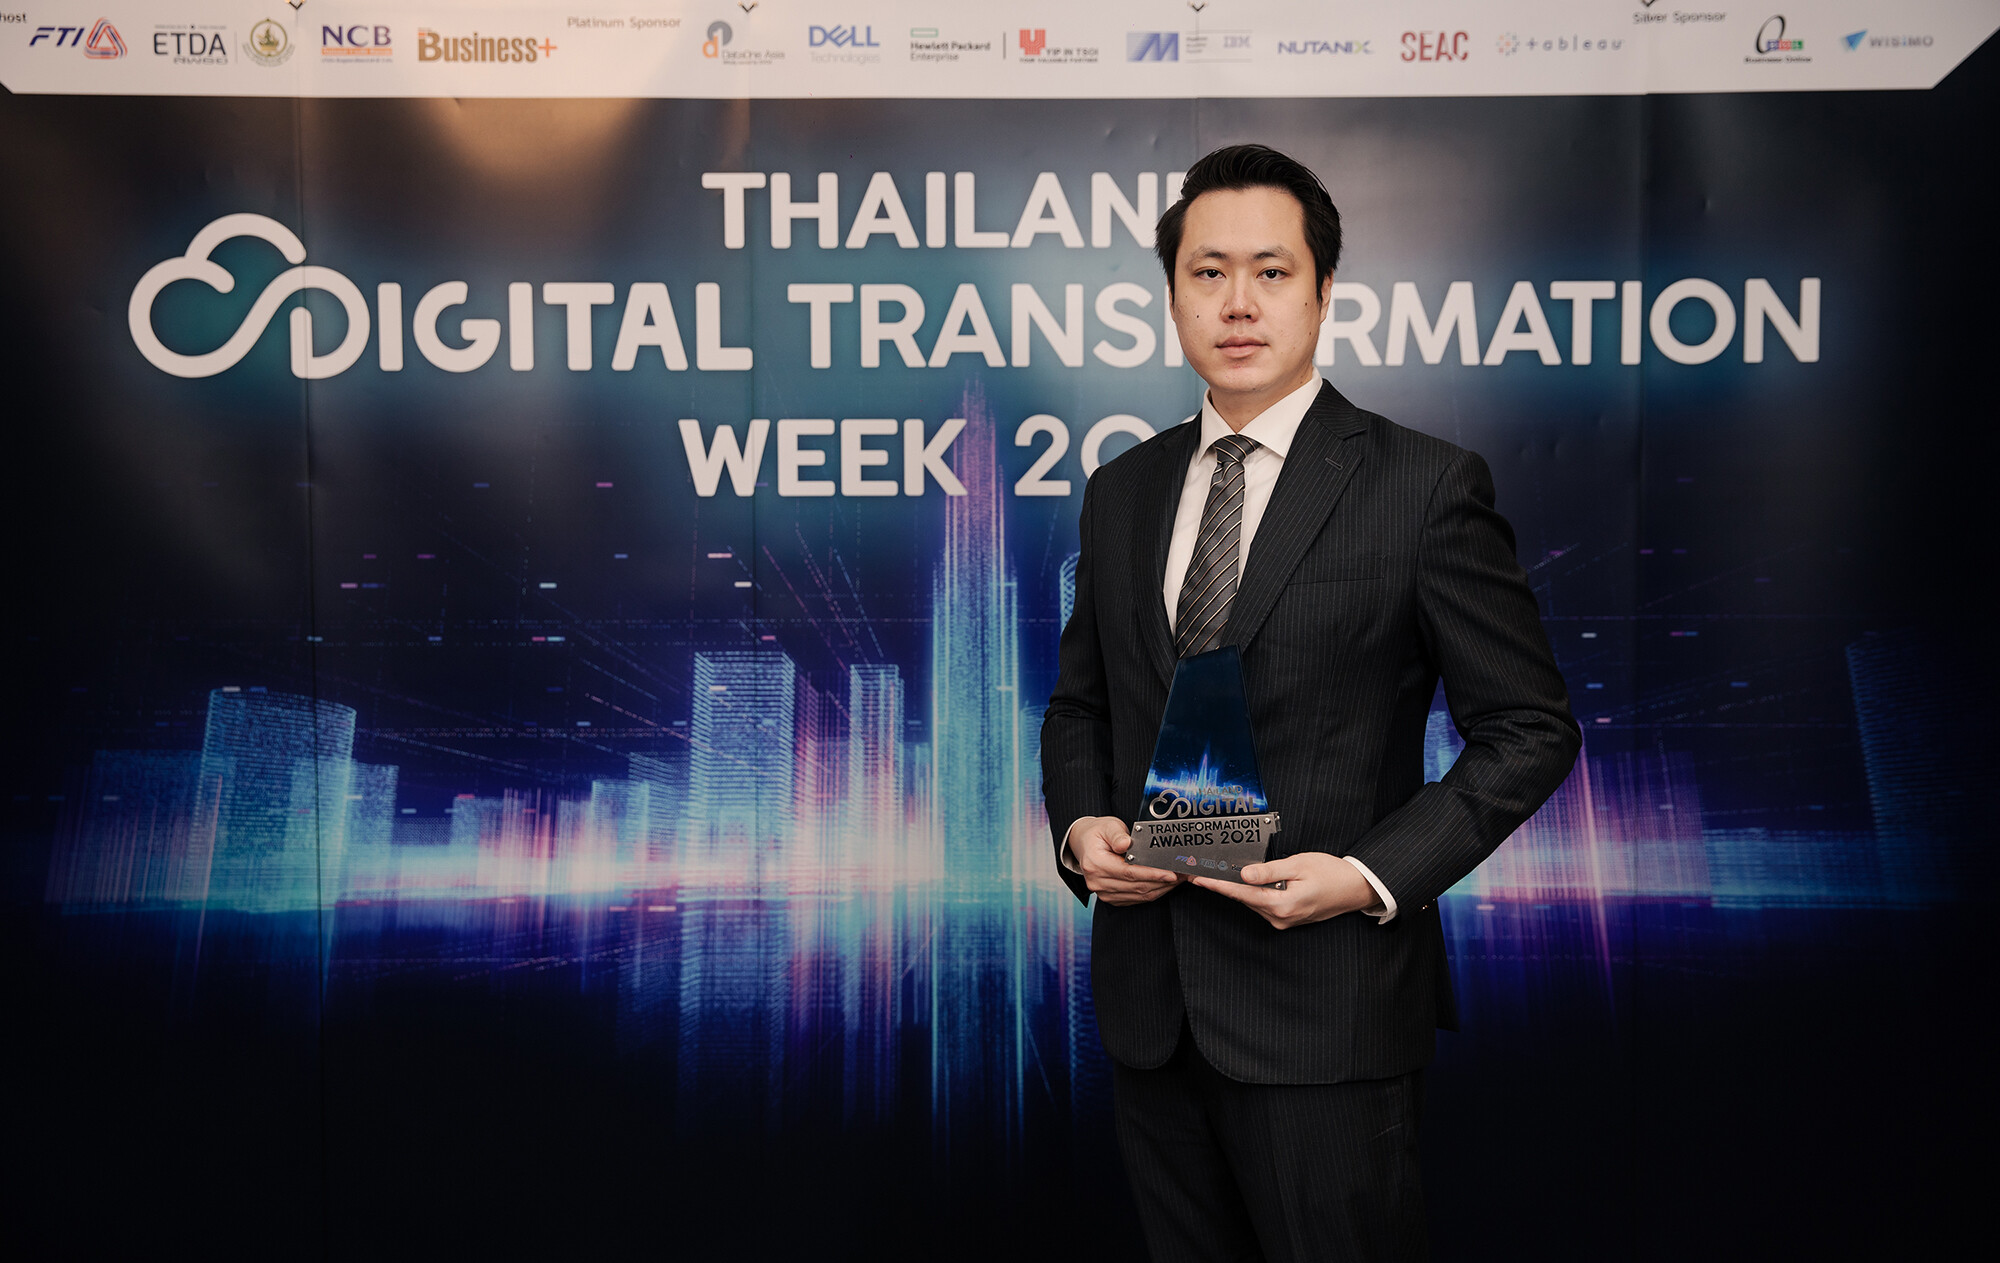 บลูบิค หรือ BBIK ตอกย้ำความเป็นผู้นำด้านดิจิทัลทรานส์ฟอร์เมชัน   คว้ารางวัลชนะเลิศ "Thailand Digital Transformation Awards 2021" สาขาบริการภาคเอกชน